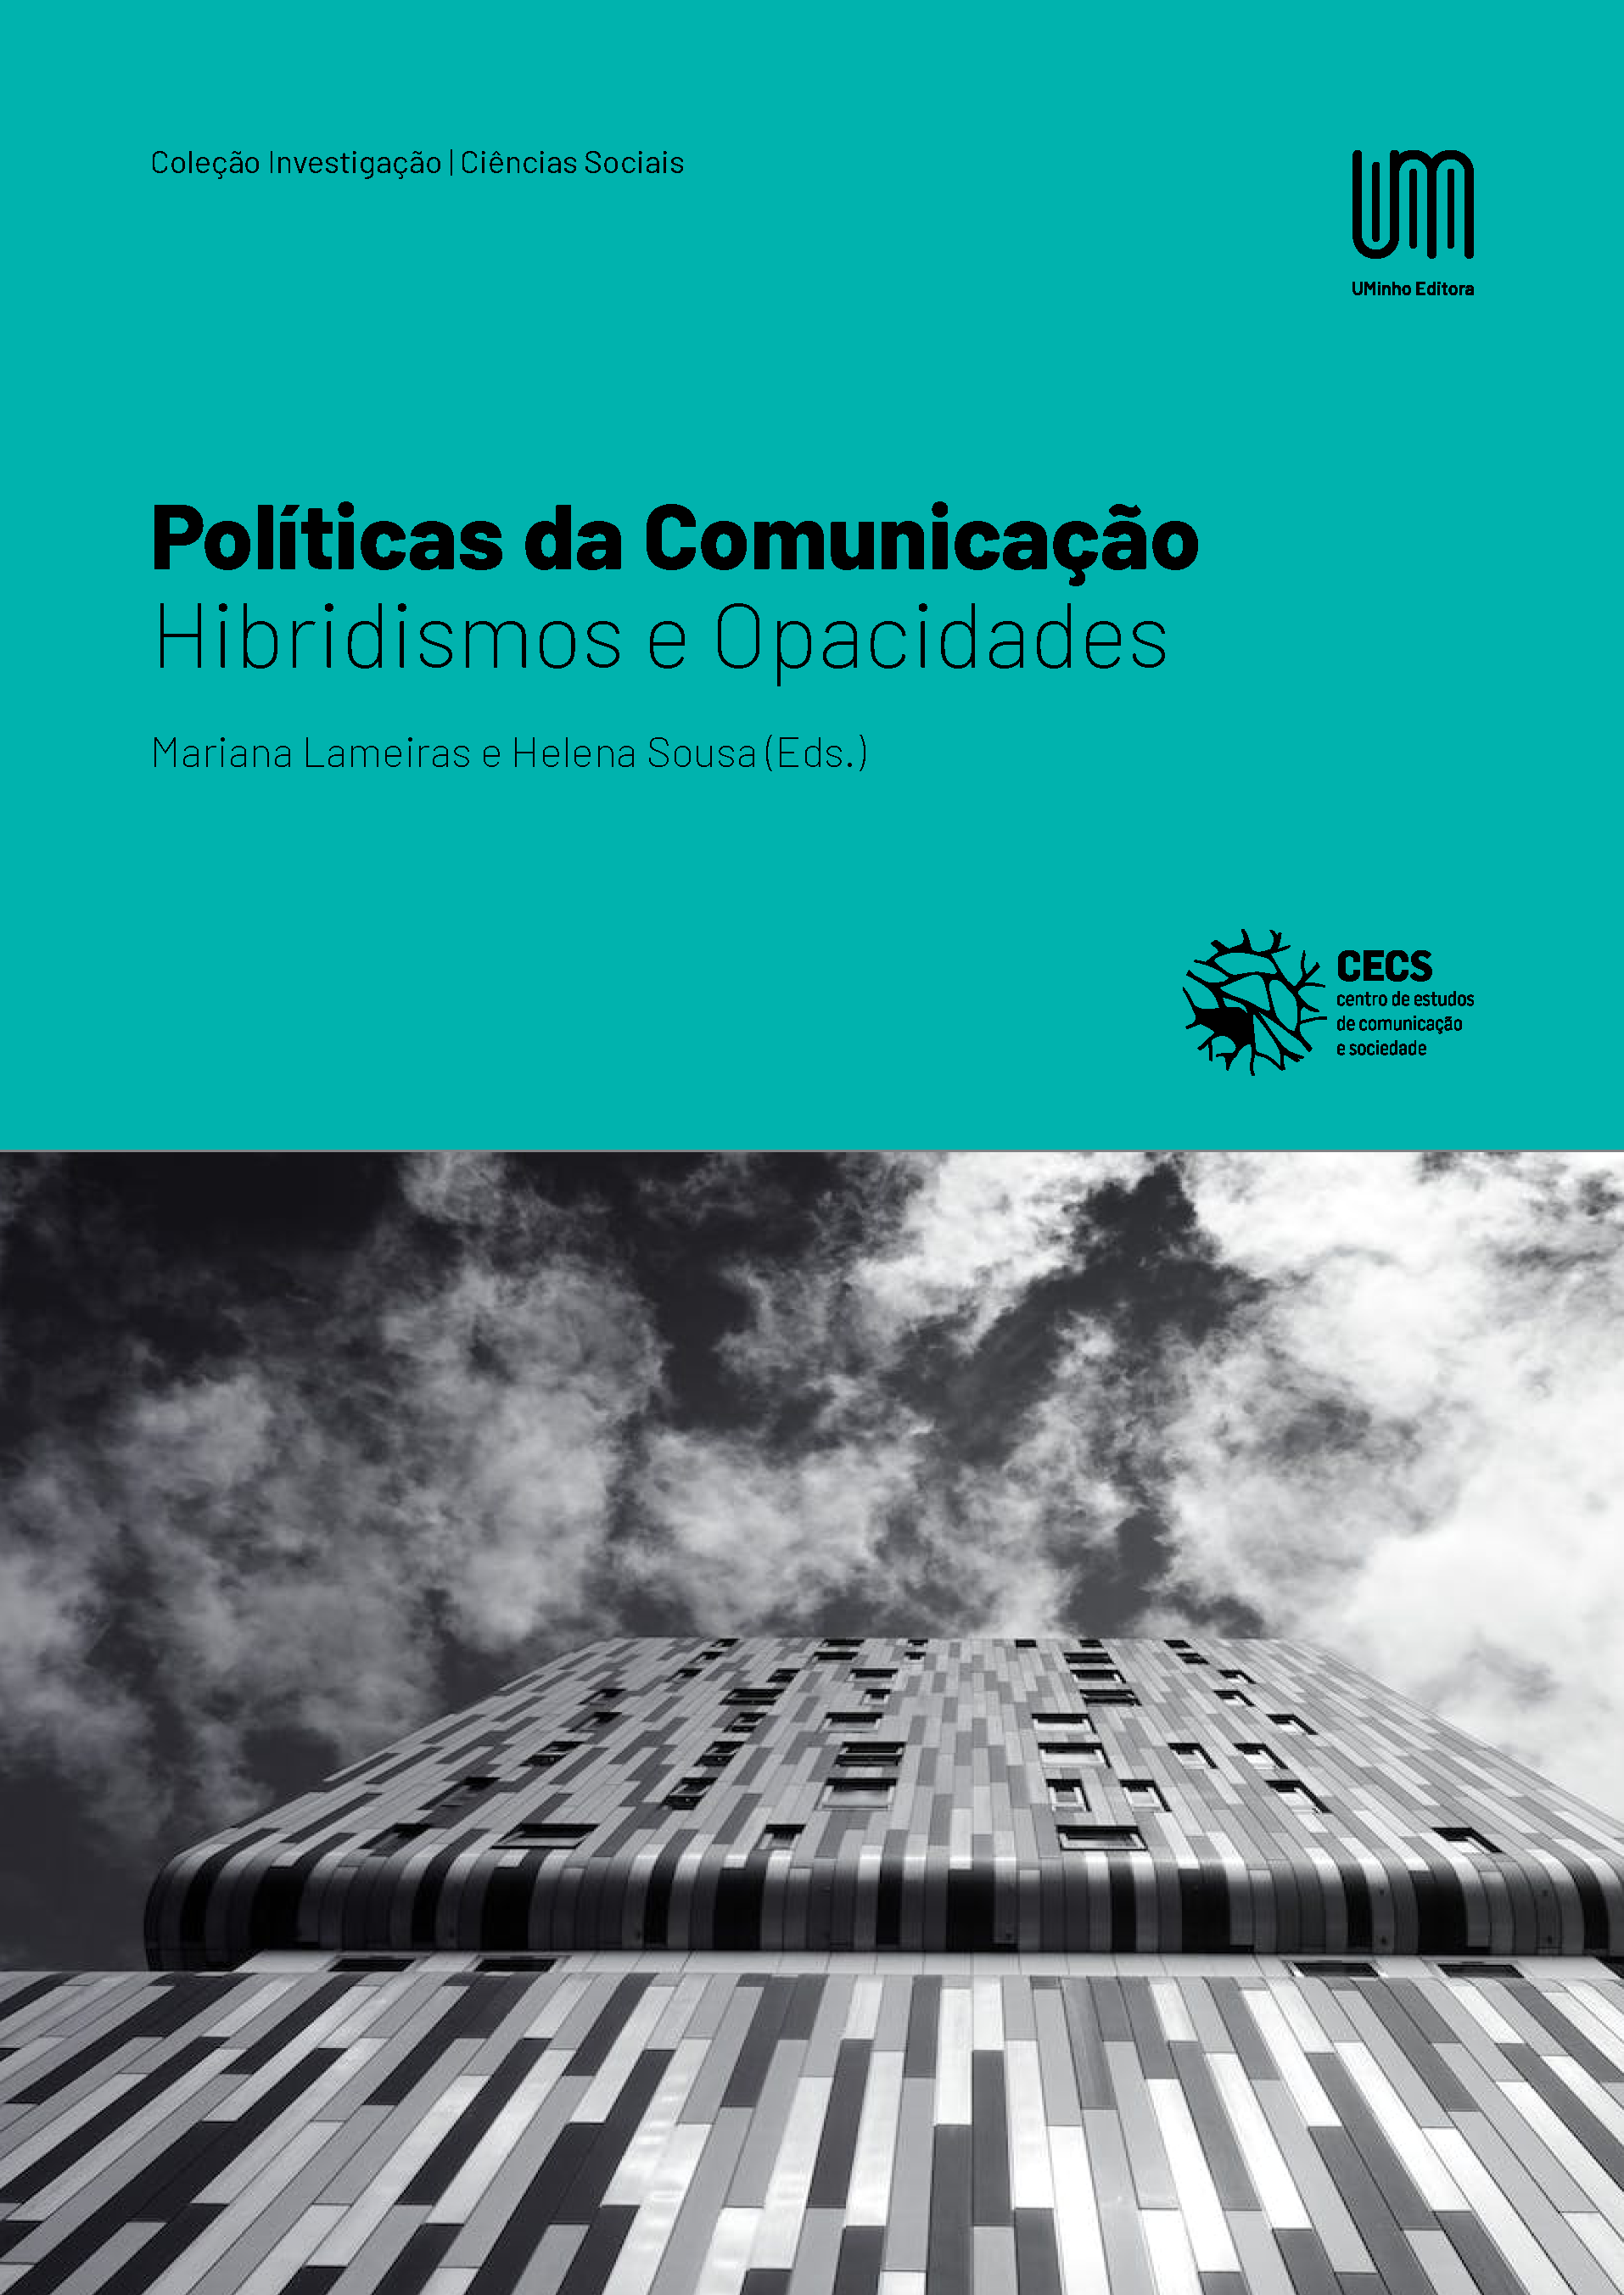 Políticas da Comunicação: Hibridismos e Opacidades  - UMinho Editora